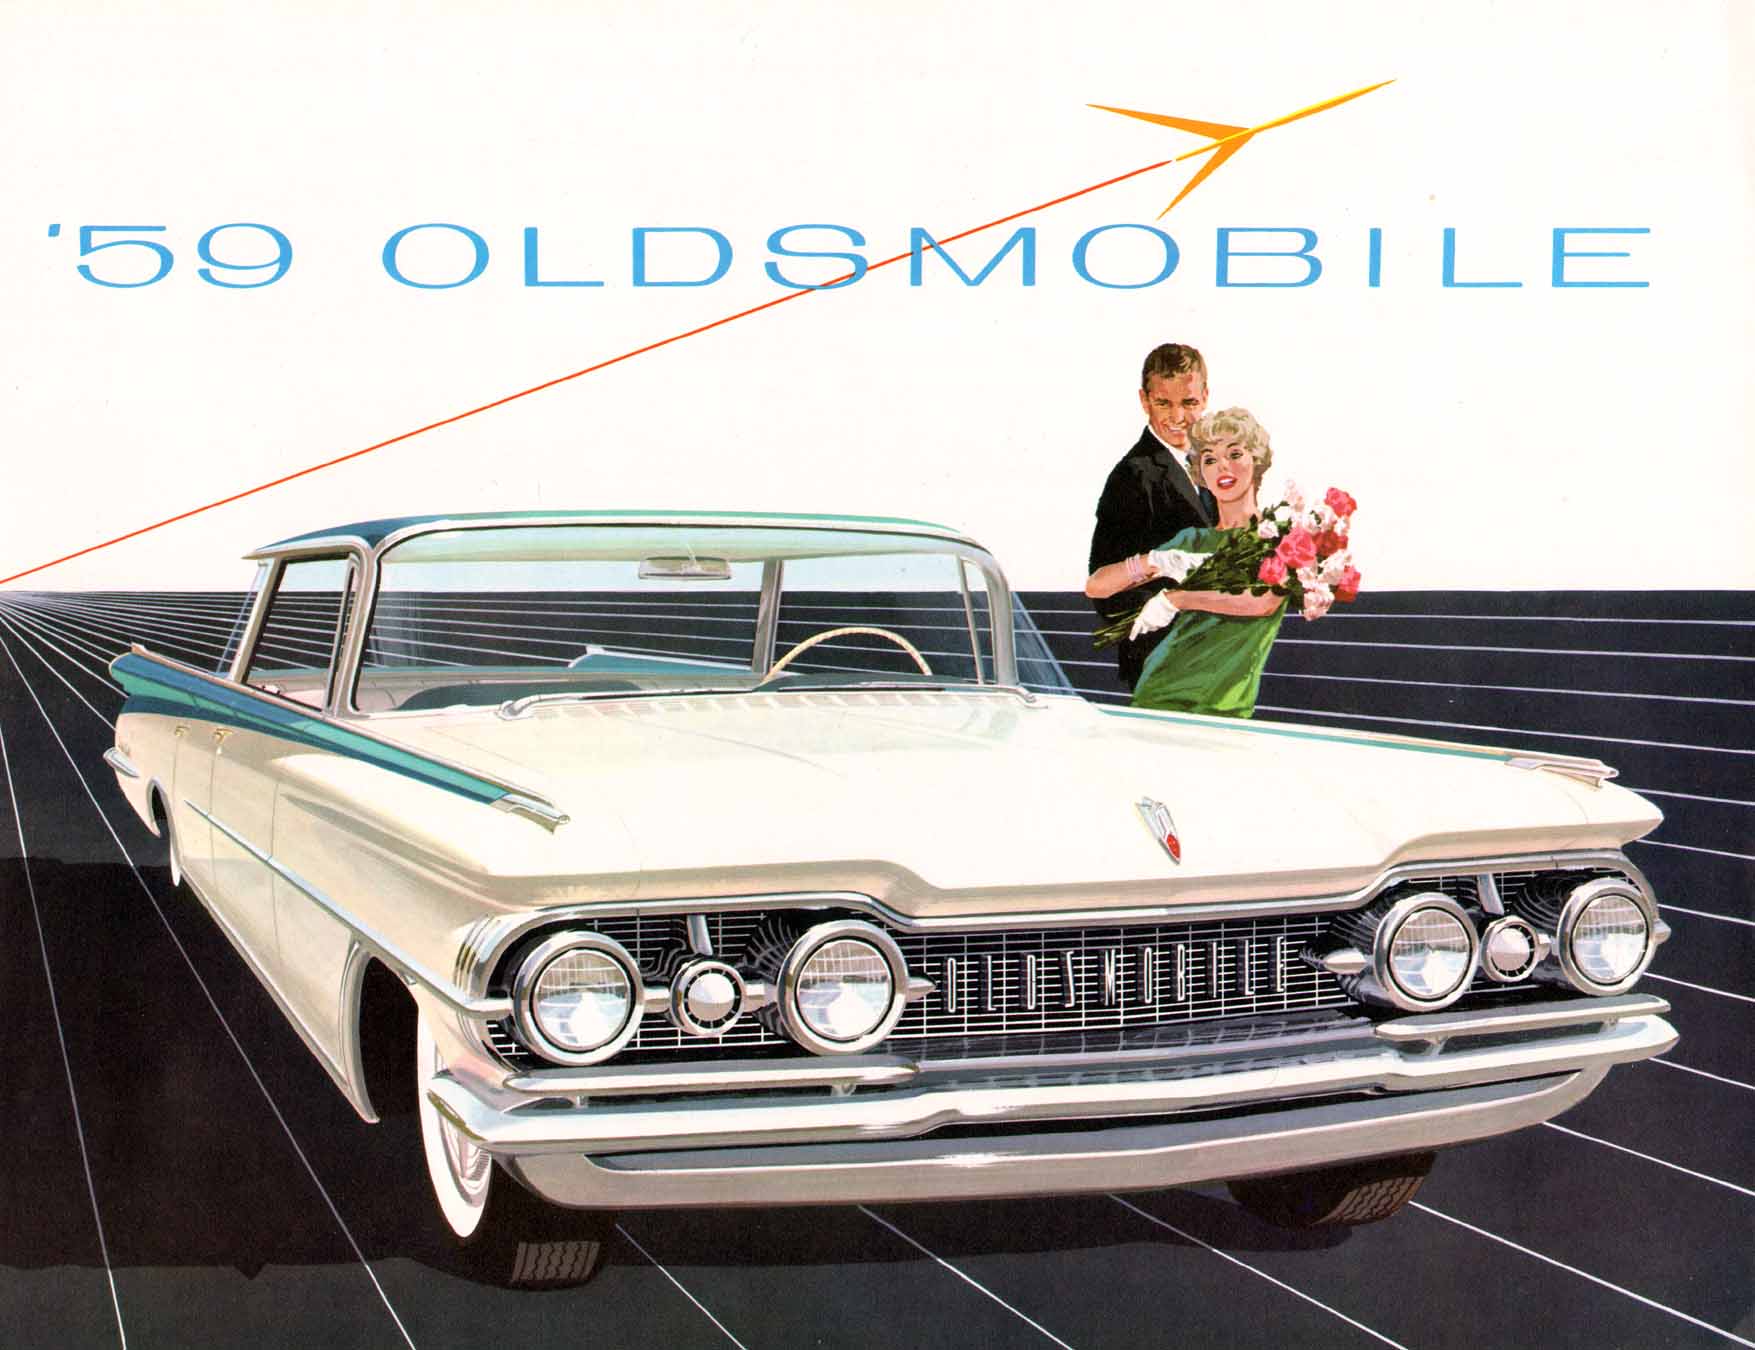 1959_Oldsmobile-01